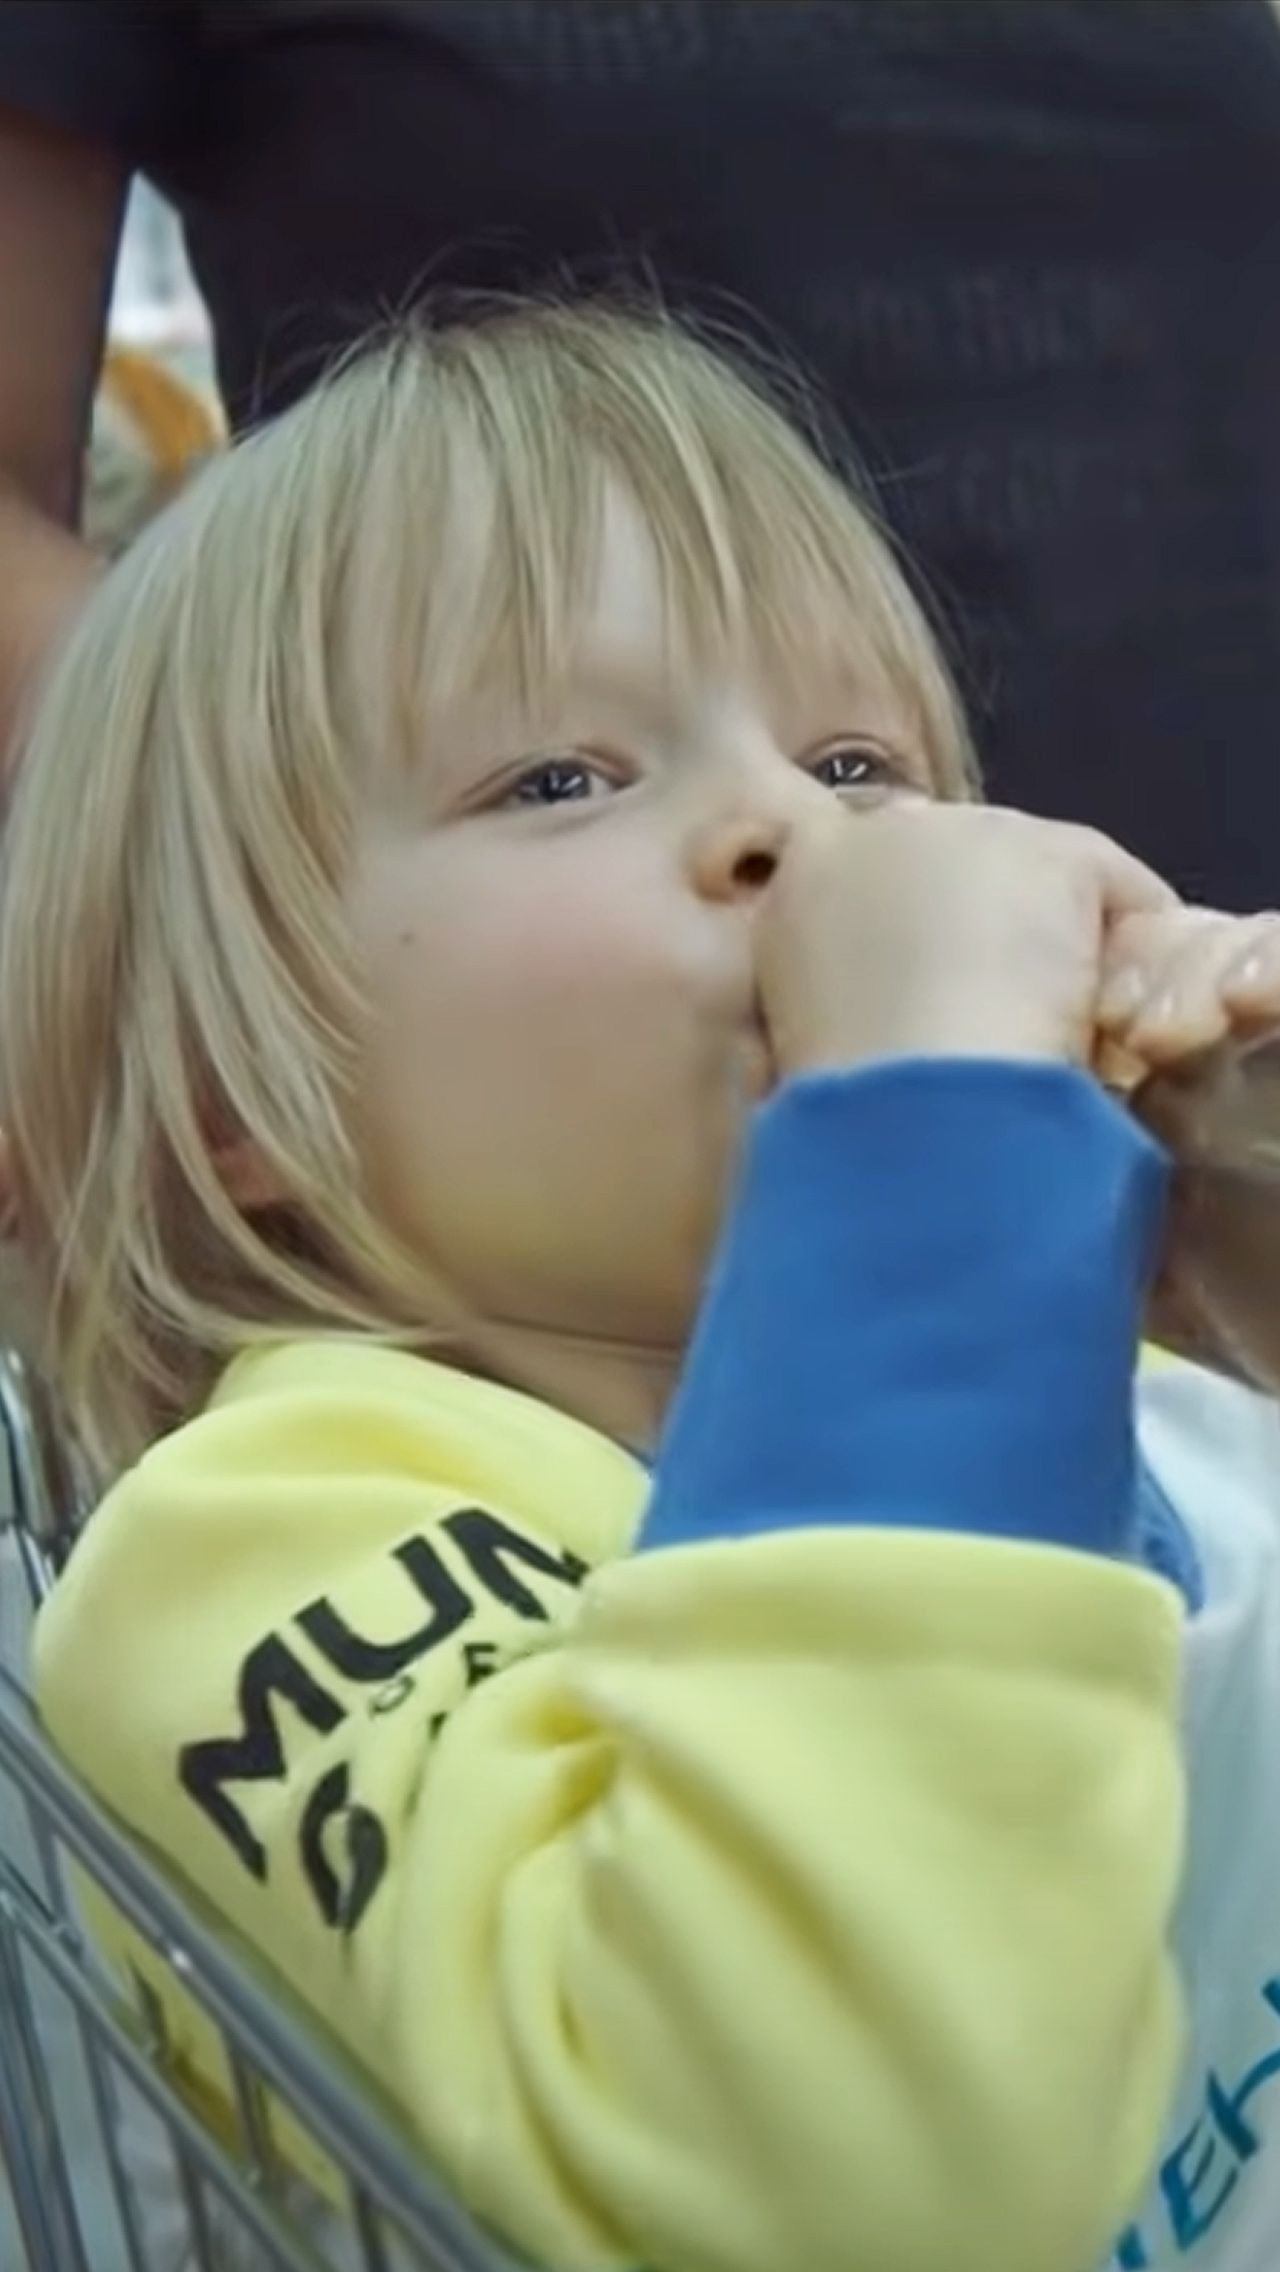 В клипе Филиппа Киркорова на песню «Цвет настроения синий» у Саши уже более ироничная роль. Юный фигурист появляется в кадре в футболке с надписью «У меня счастливое детство» и пьёт вино прямо из бутылки.